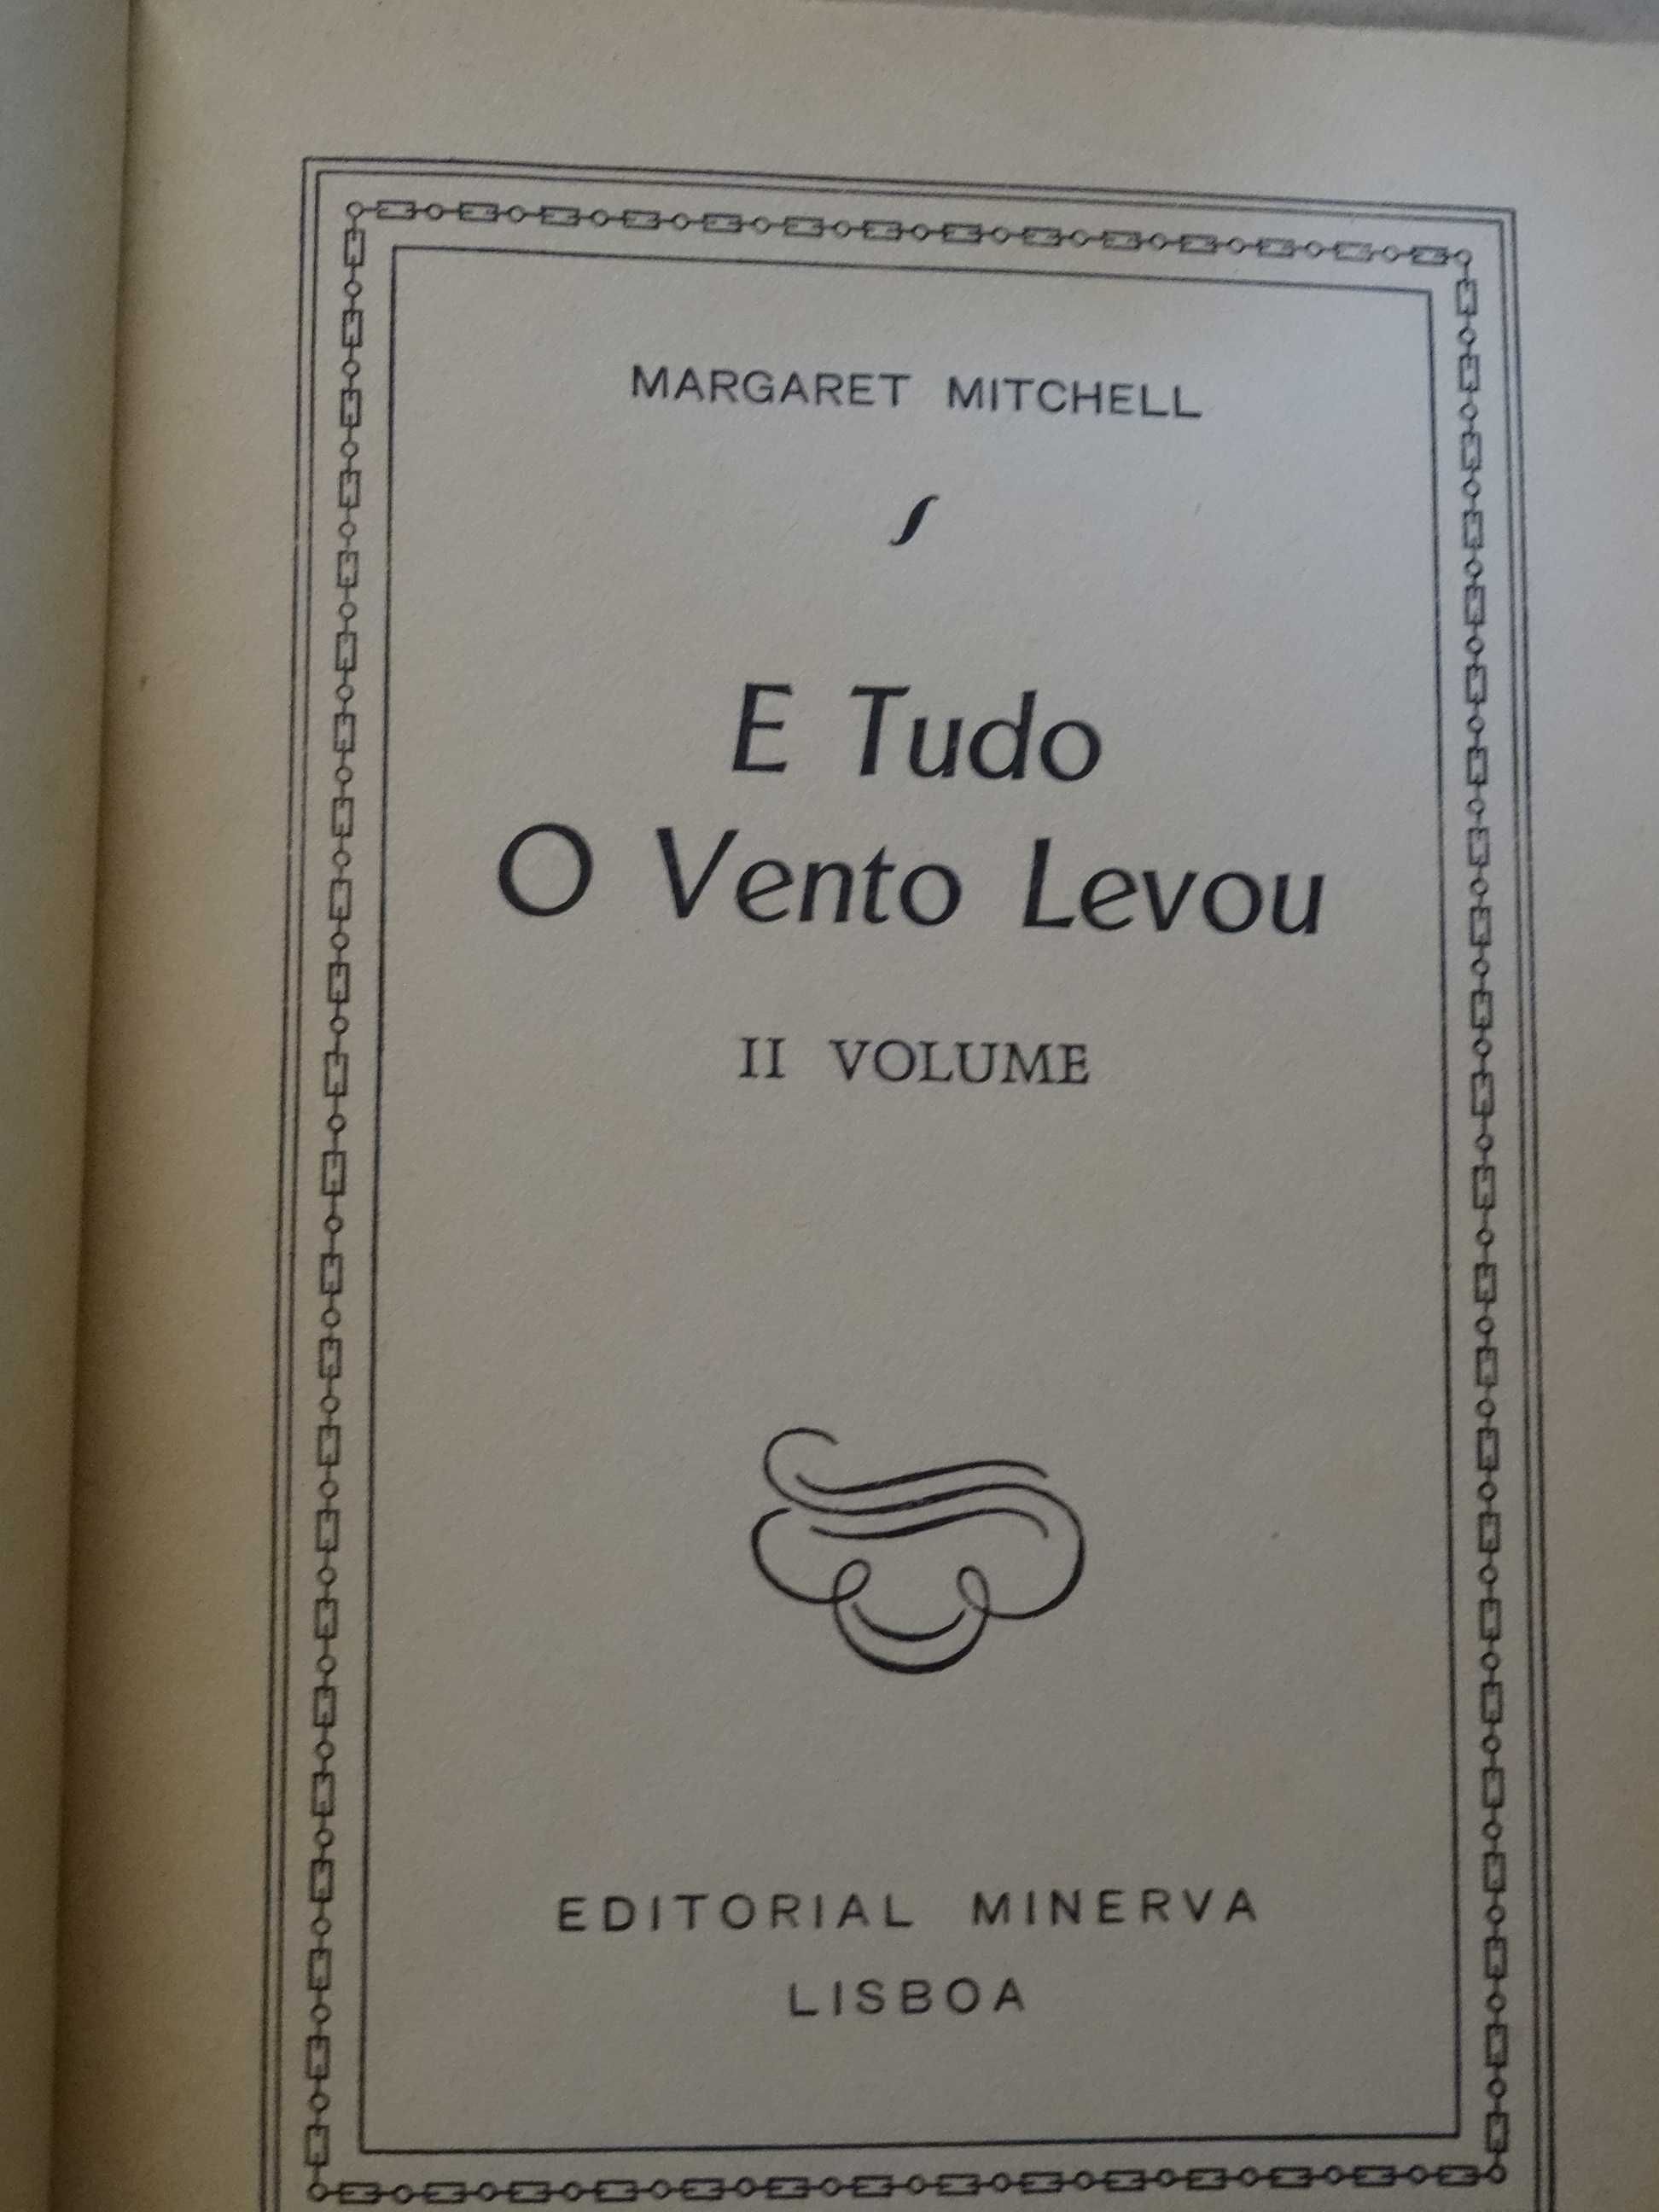 E Tudo o Vento Levou de Margaret Mitchell - 2 Volumes - 1ª Edição